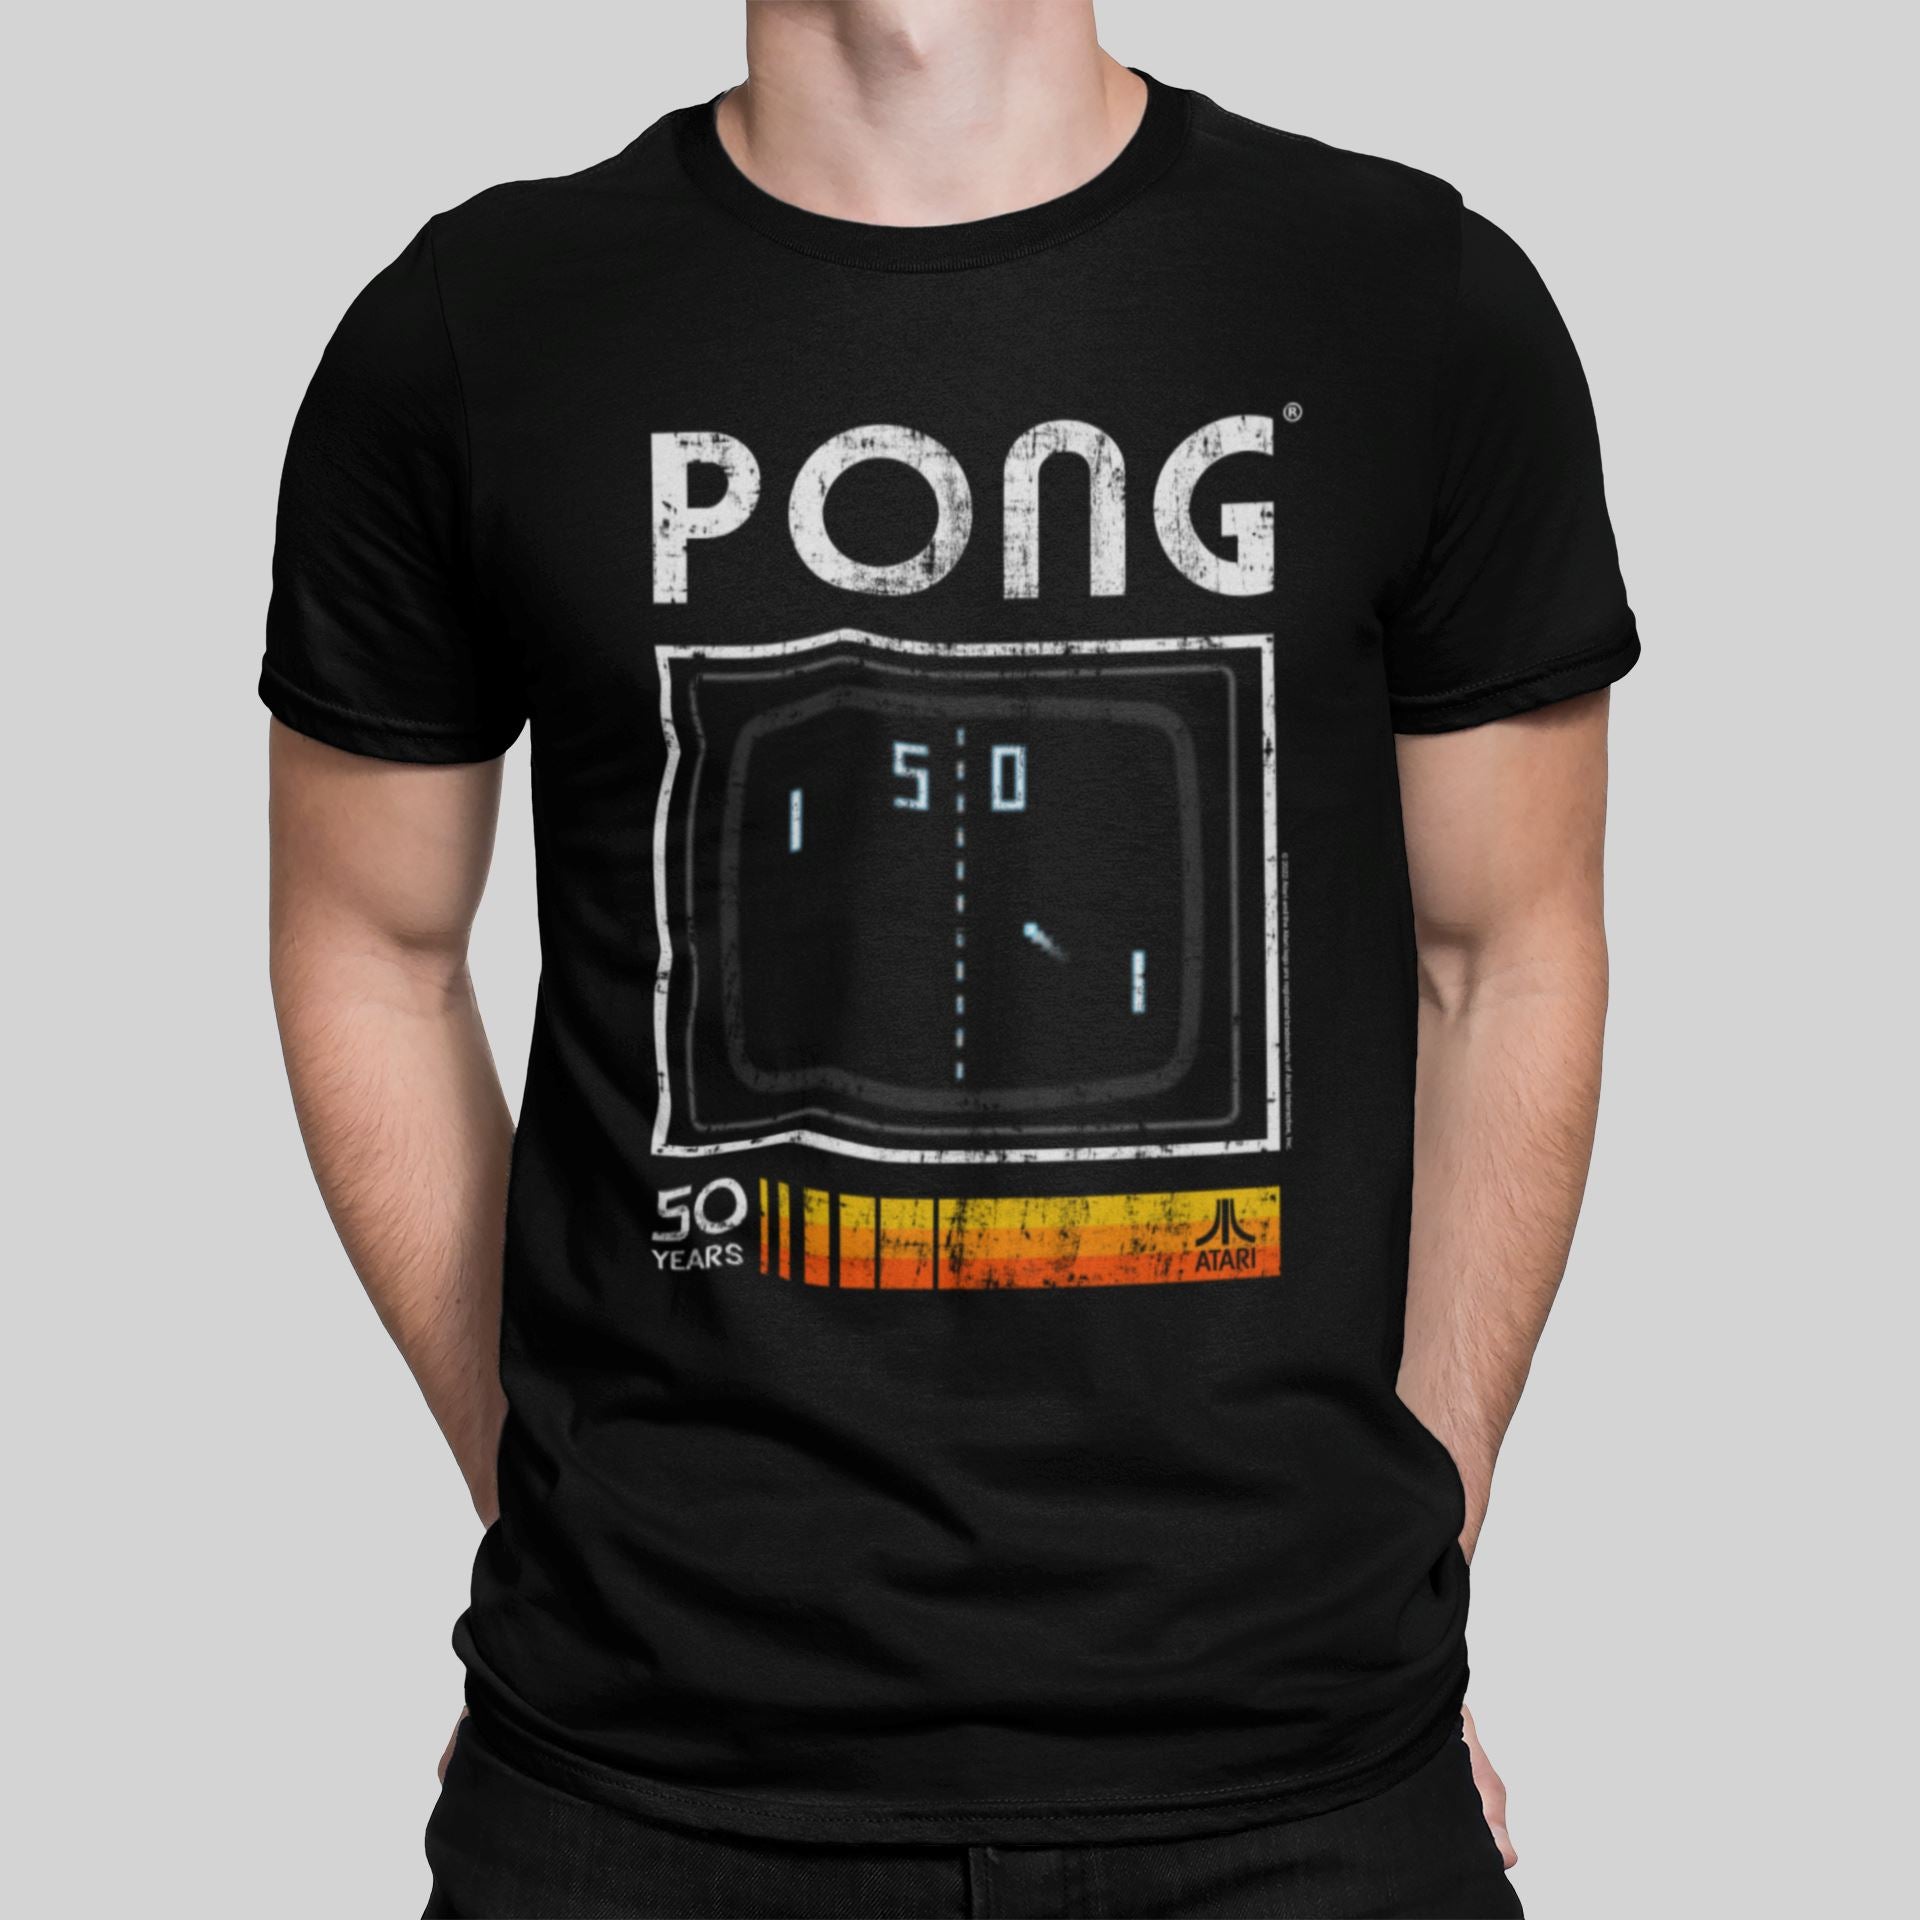 Atari PONG 50th Anniversary Retro Gaming T-Shirt T-Shirt Seven Squared Small 34-36" Black 